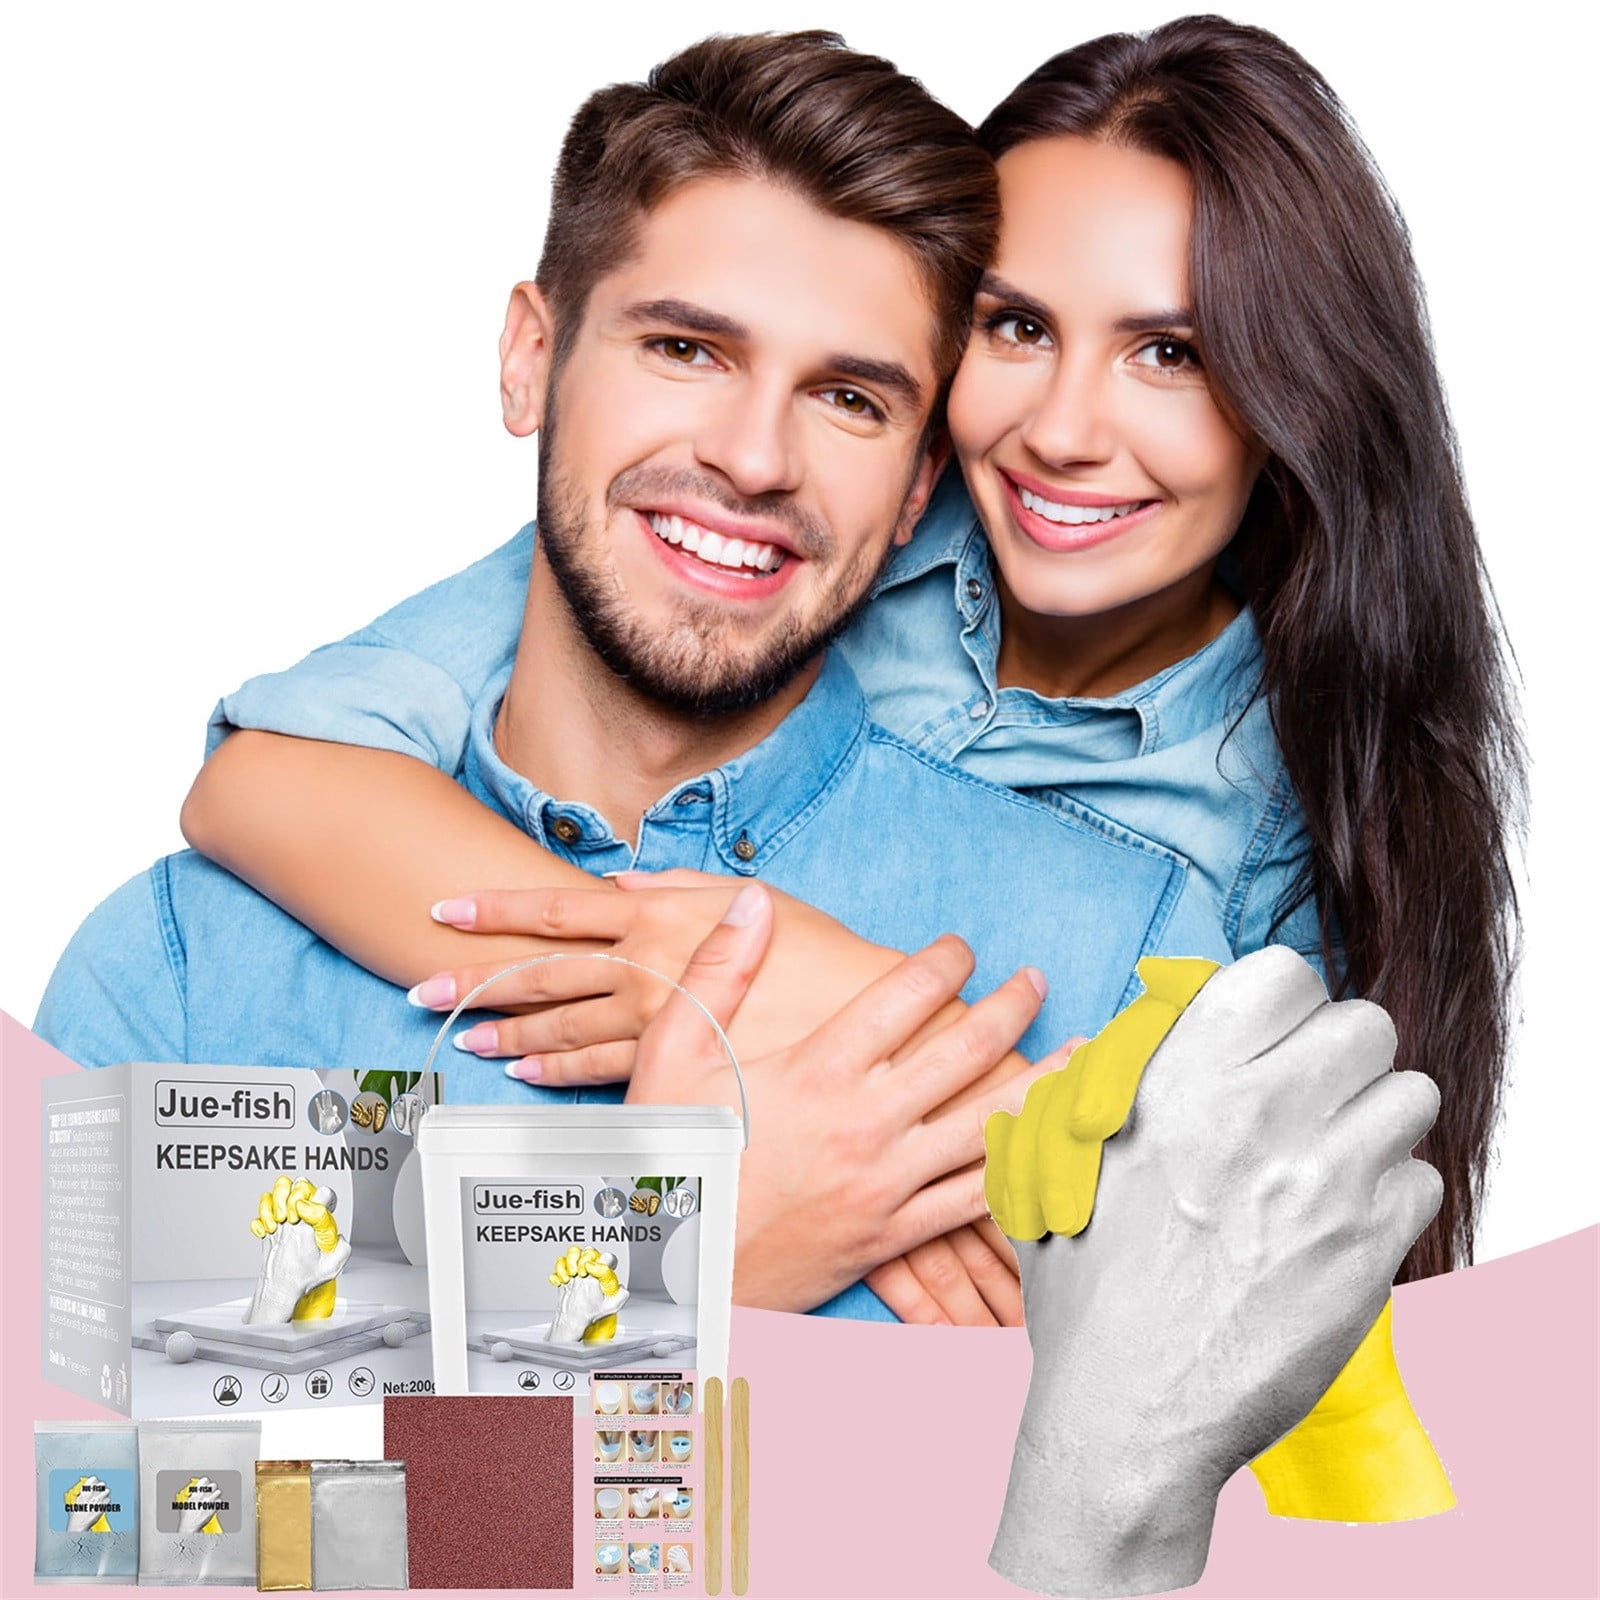 Relax love Hand Casting Kit Plaster Hand Mold Kit DIY Gift for  Couples,Wedding, Anniversary, Family & Kids 